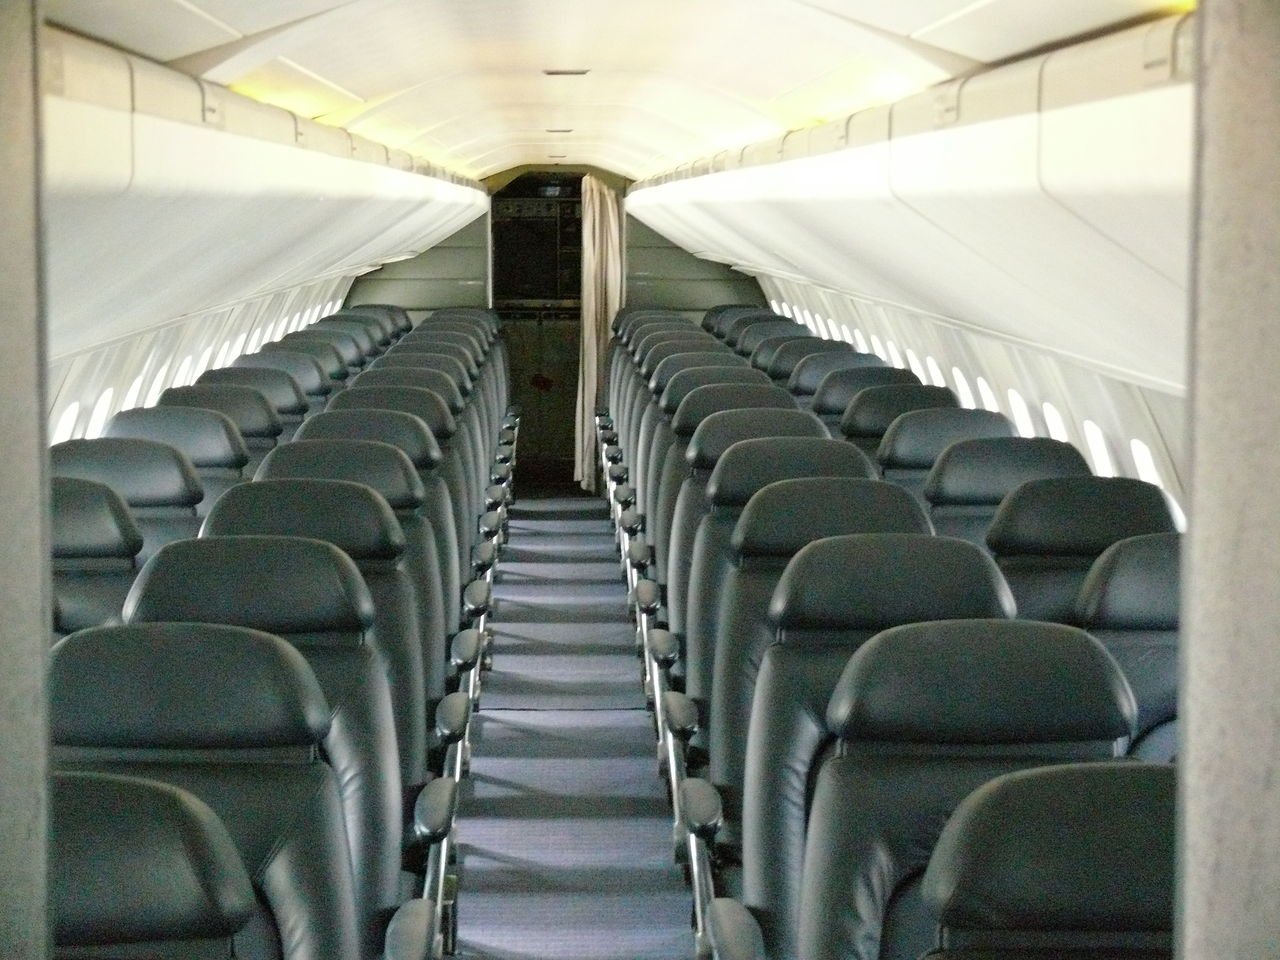 Los aviones de Air France y British Airways estaban configurados con una única clase con 100 asientos. Foto: Ad Meskens